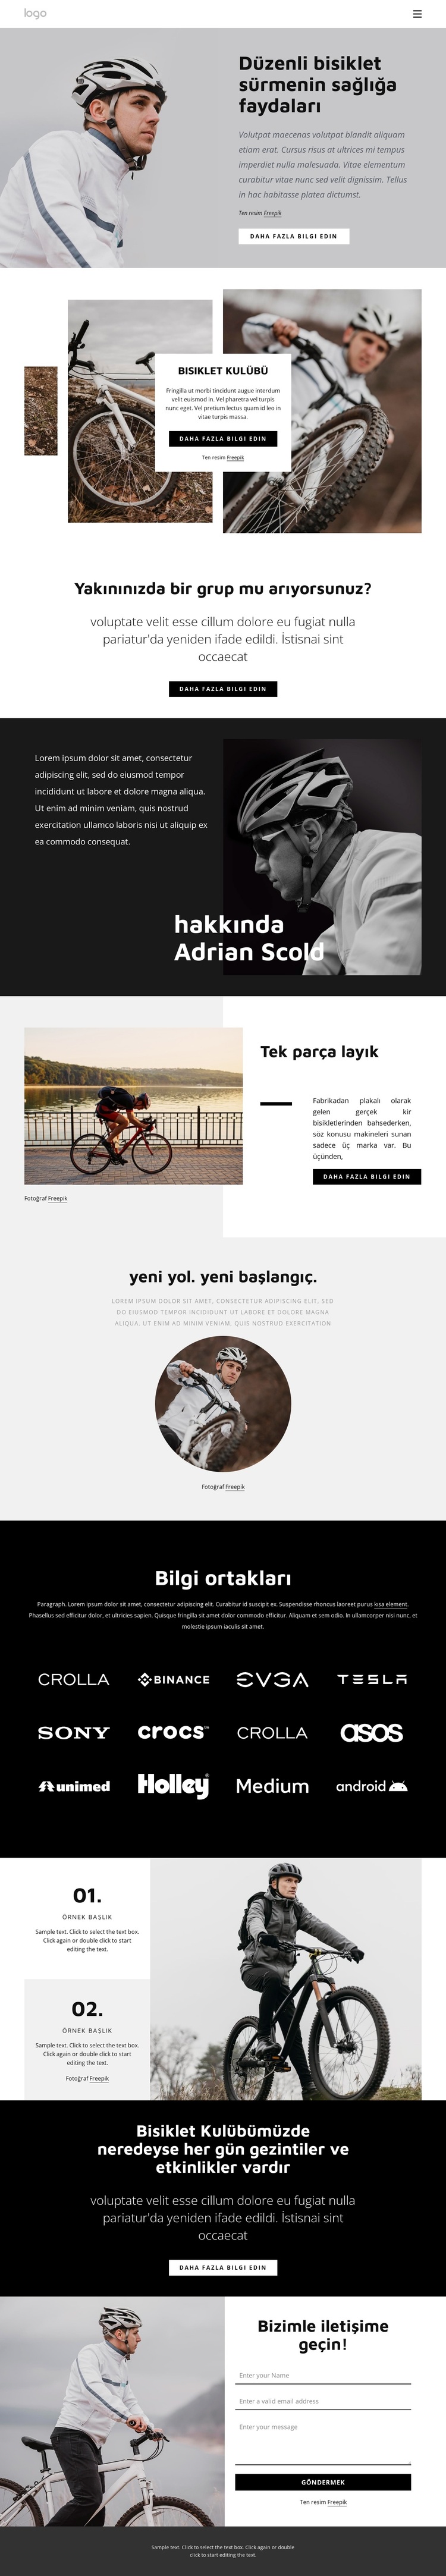 Düzenli bisiklet sürmenin faydaları WordPress Teması